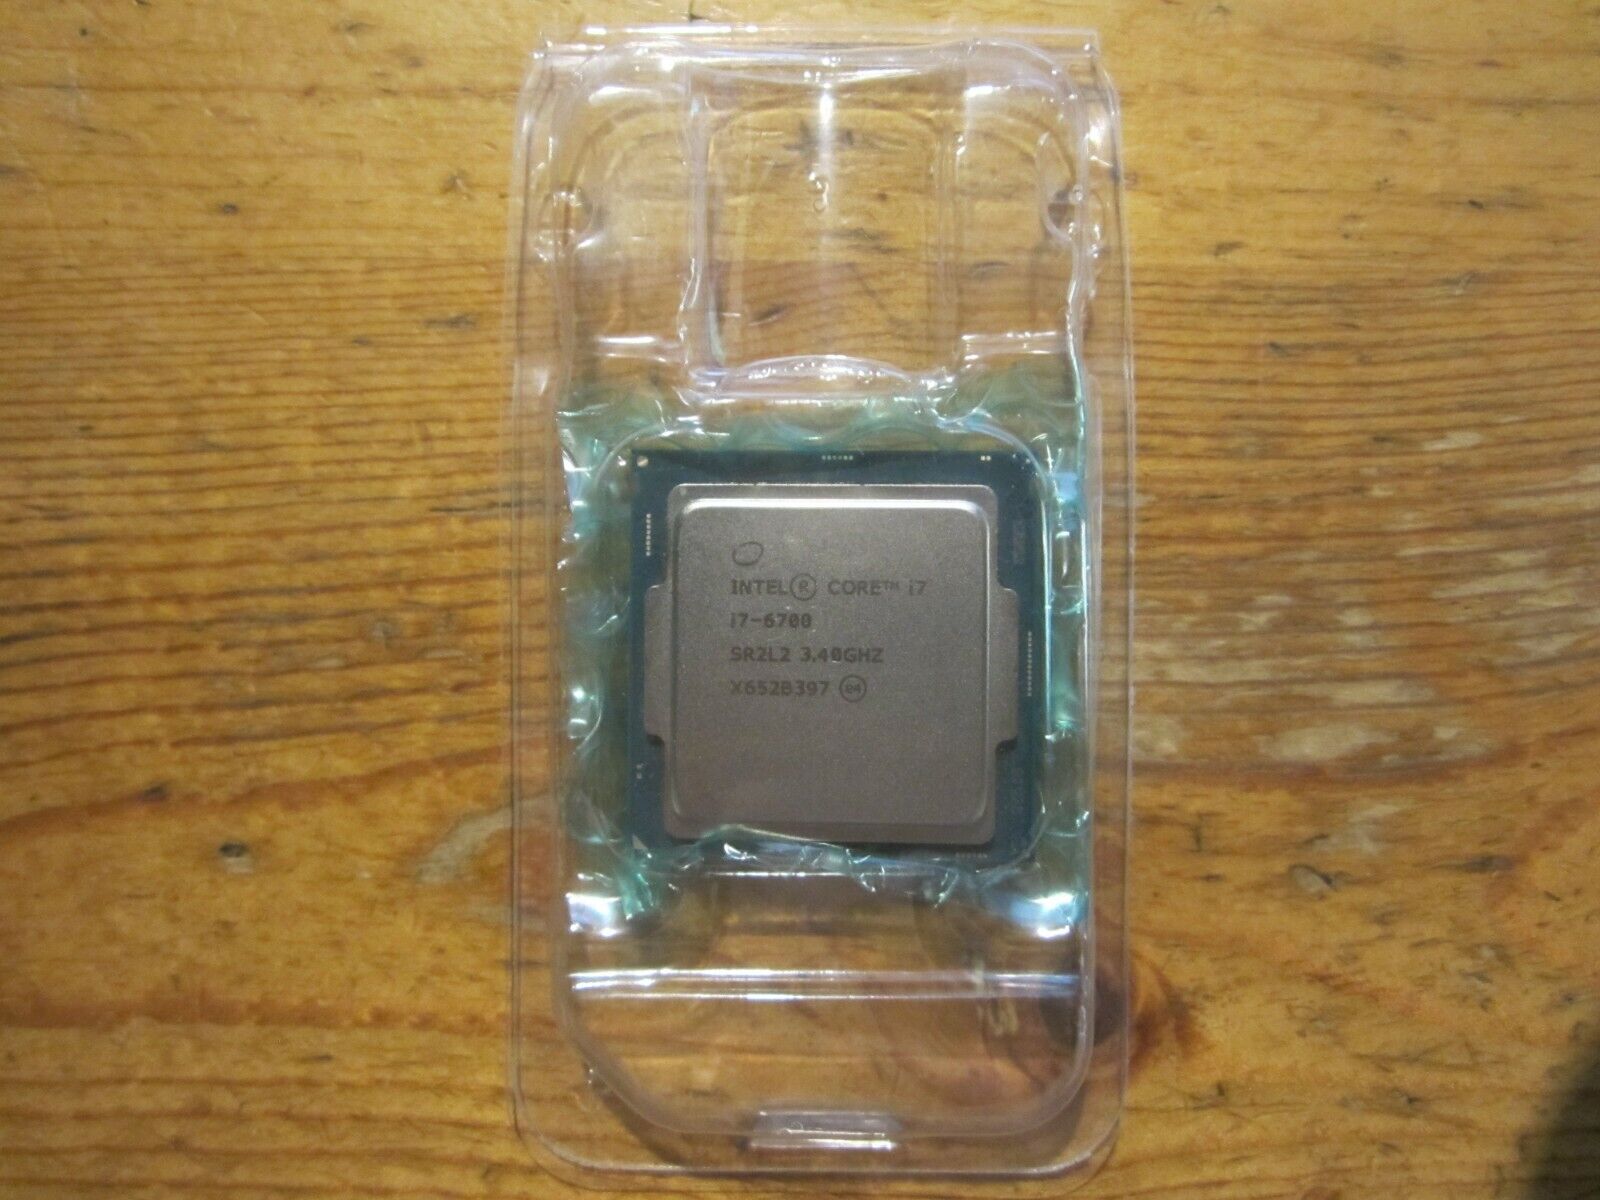 Intel Core i7-6700 3.4GHz Skylake SR2L2 SR2BT CPU LGA1151 Processor